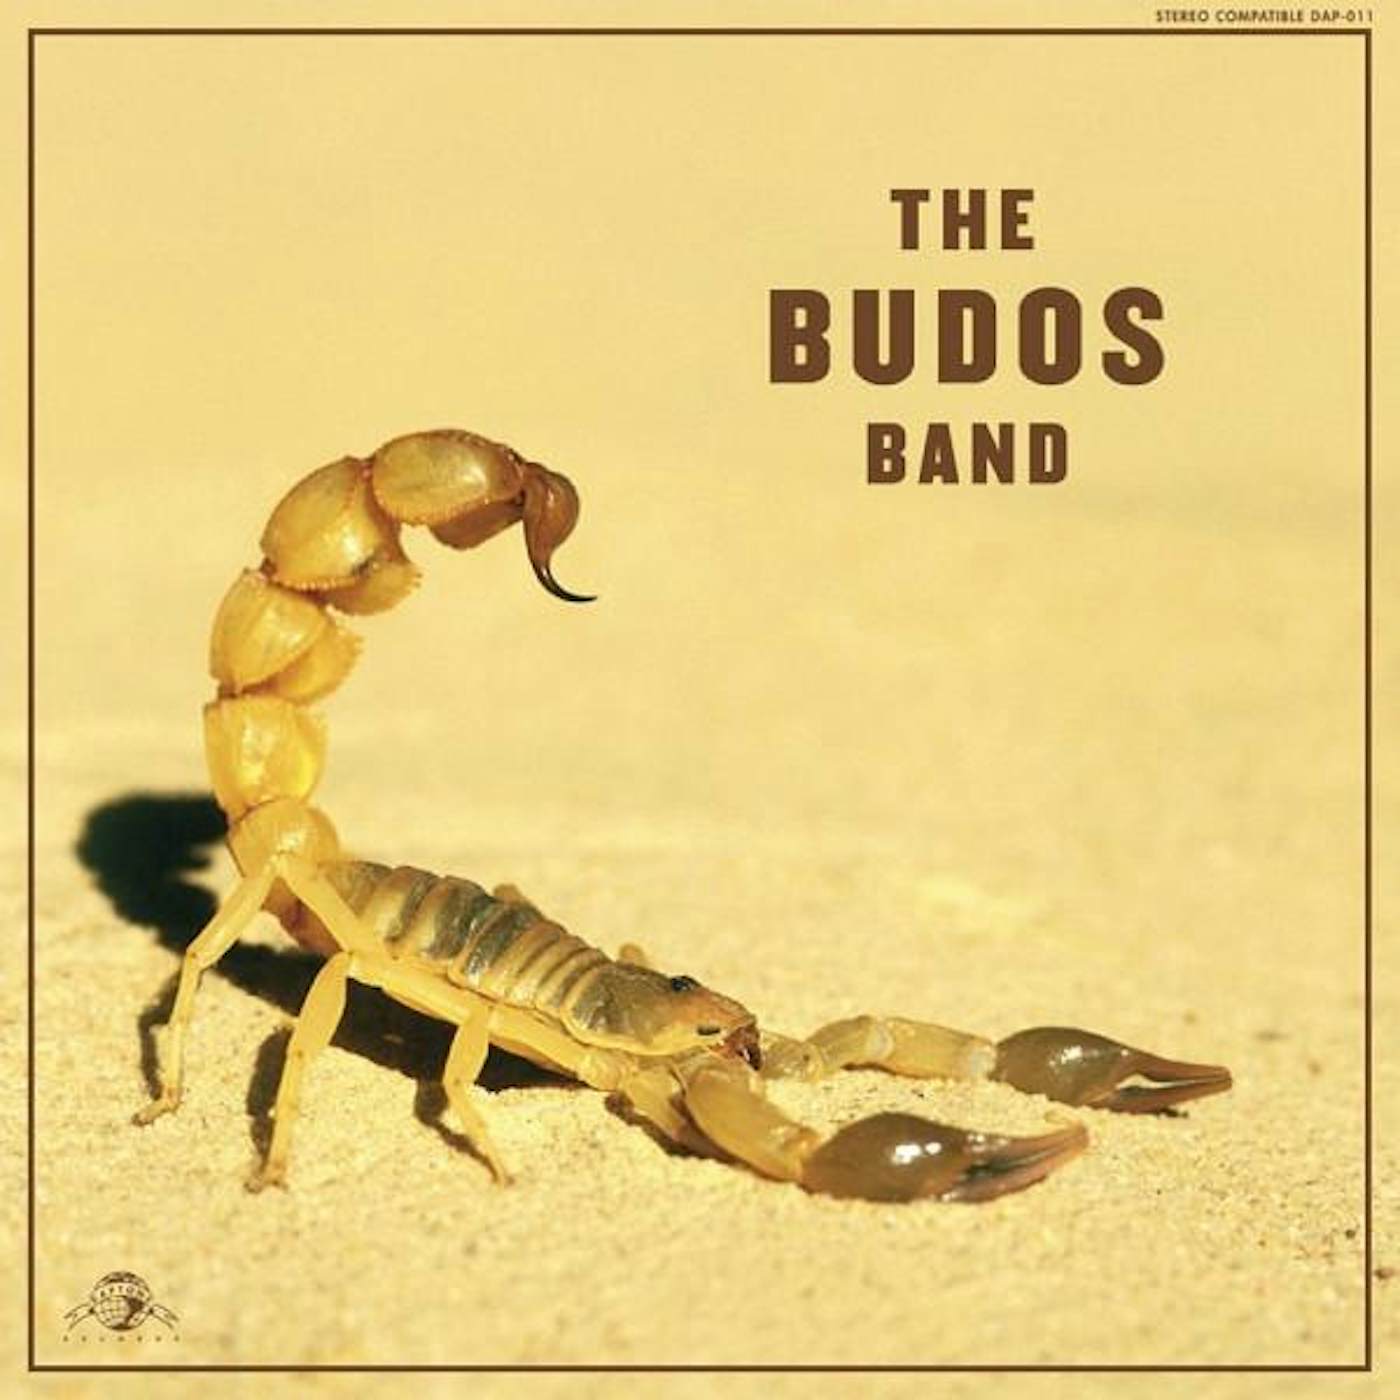 The Budos Band II CD